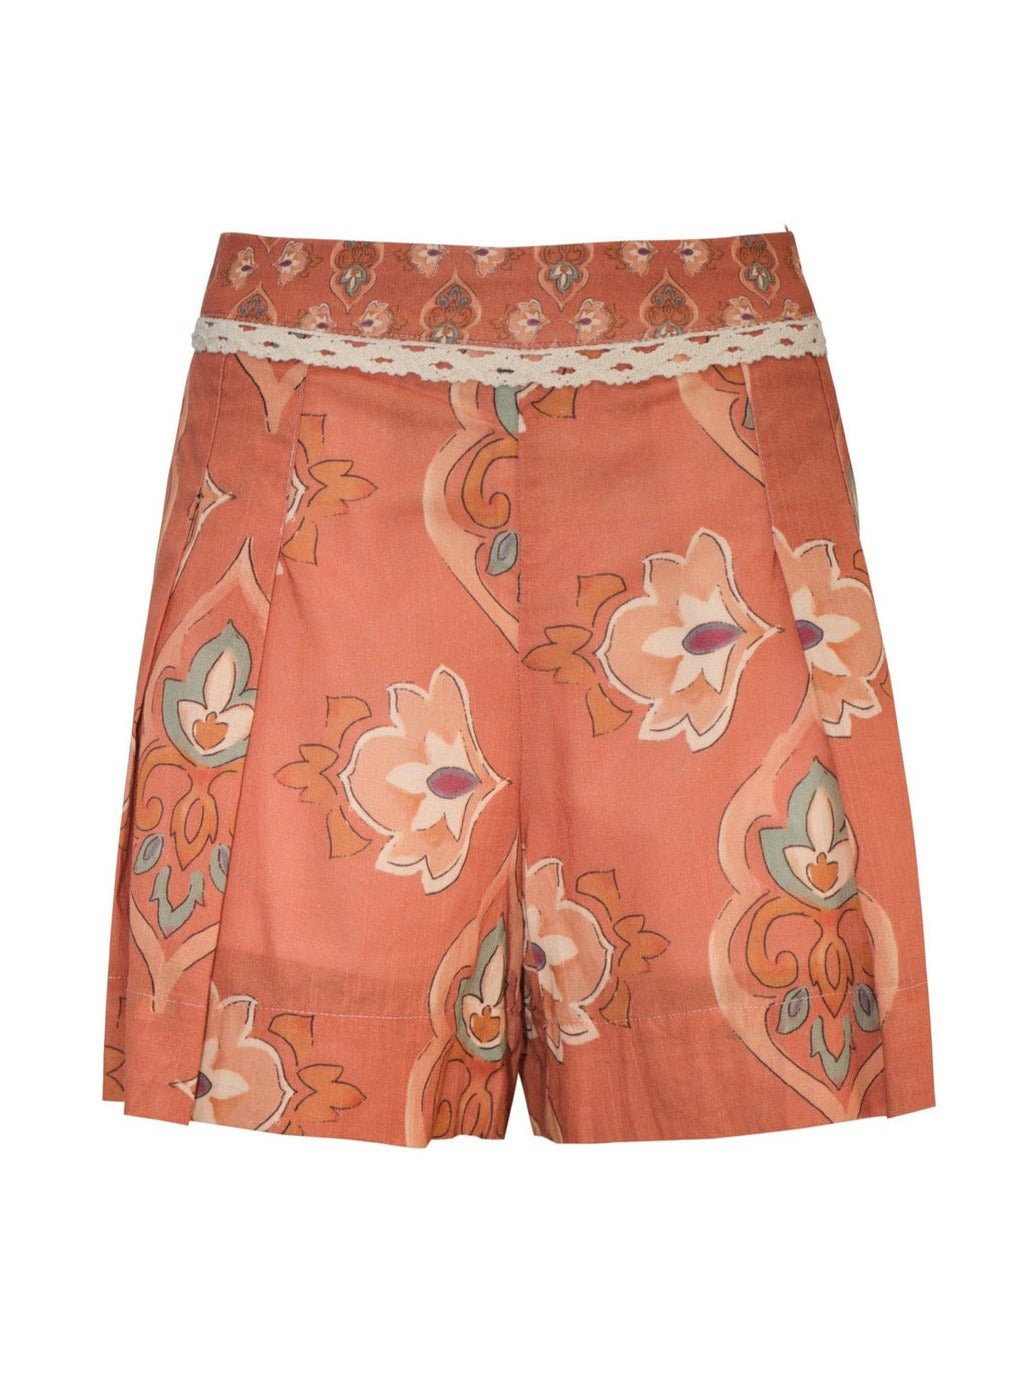 Dolce & Gabbana Orange Cotton Drawstring Capri Pants L Dolce